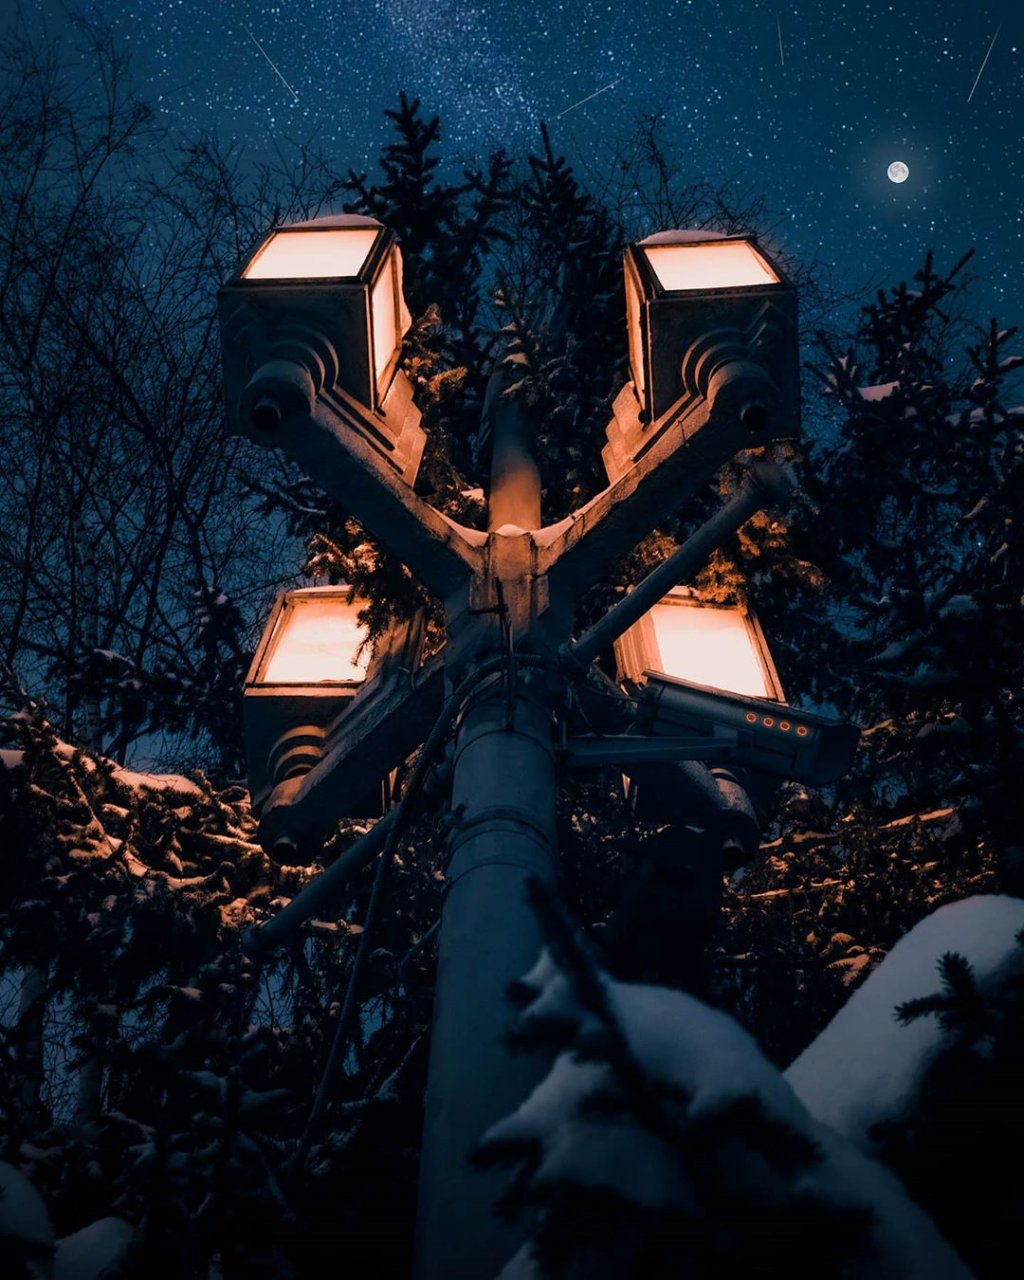 Фото дня в Сыктывкаре: сказочное ночное небо над яркими фонарями в парке